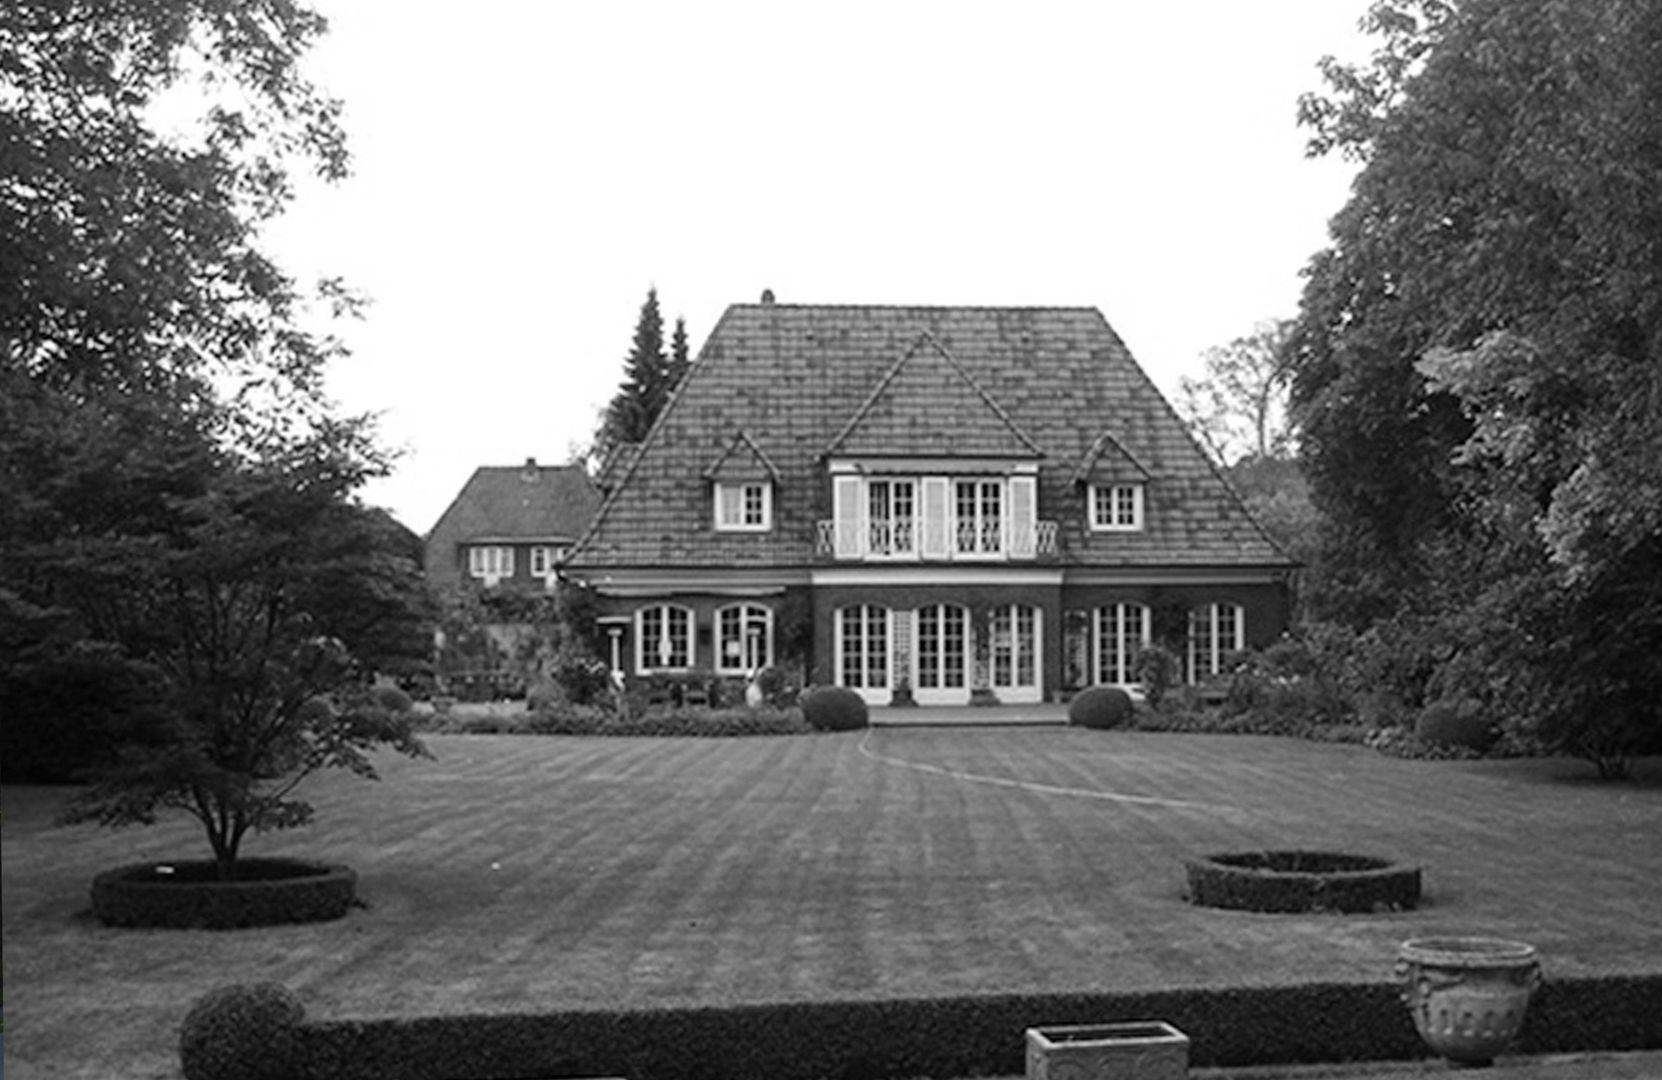 Villa in Othmarschen, Andreas Edye Architekten Andreas Edye Architekten